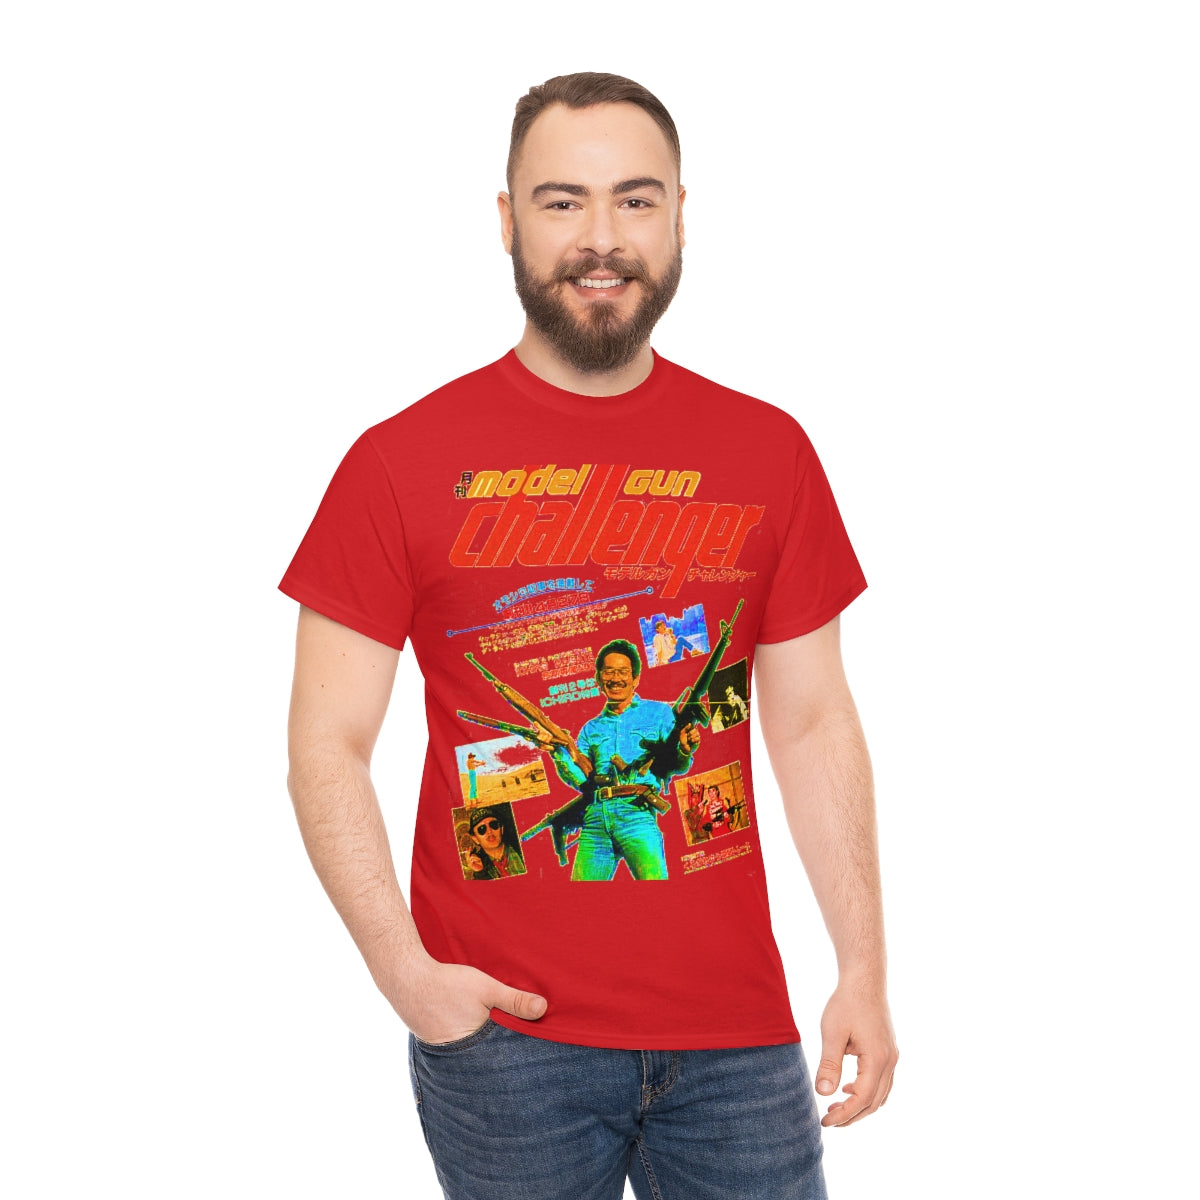 model gun challenger shirt gives you better life – best cotton shirt –  Official Shoppe